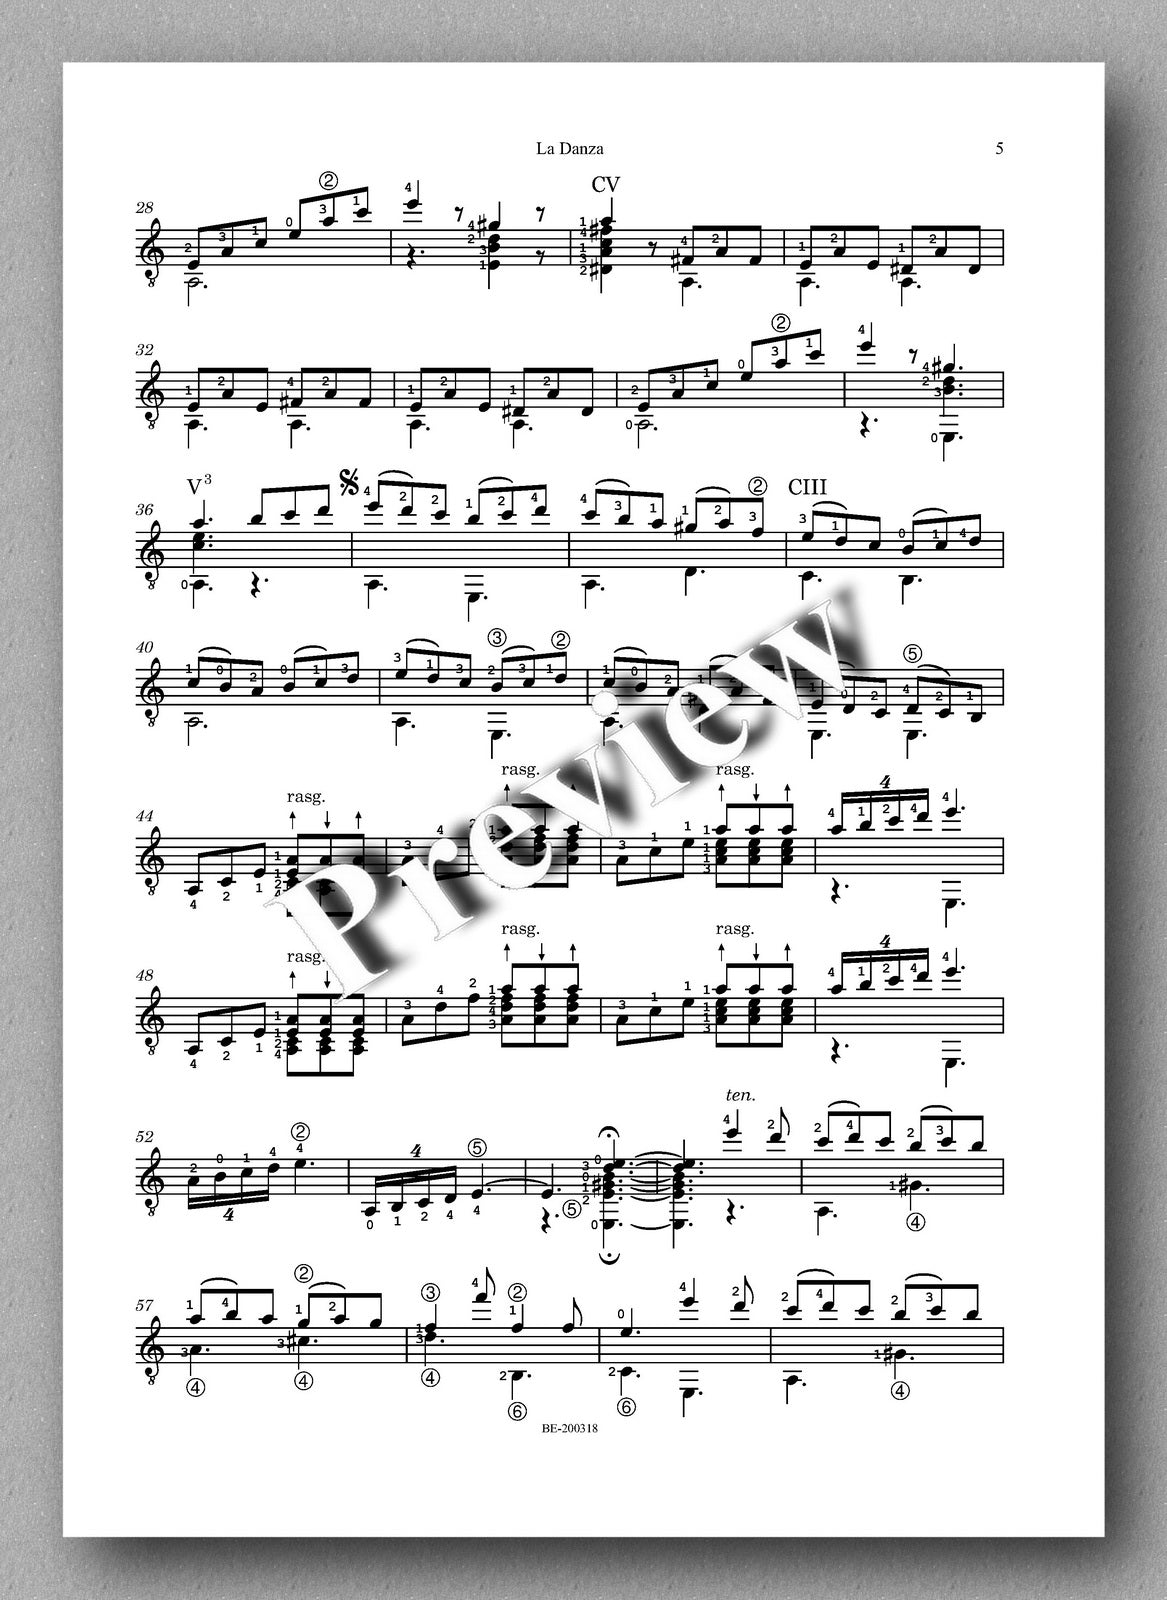 Gioachino Rossini, La Danza - preview of the music score 2